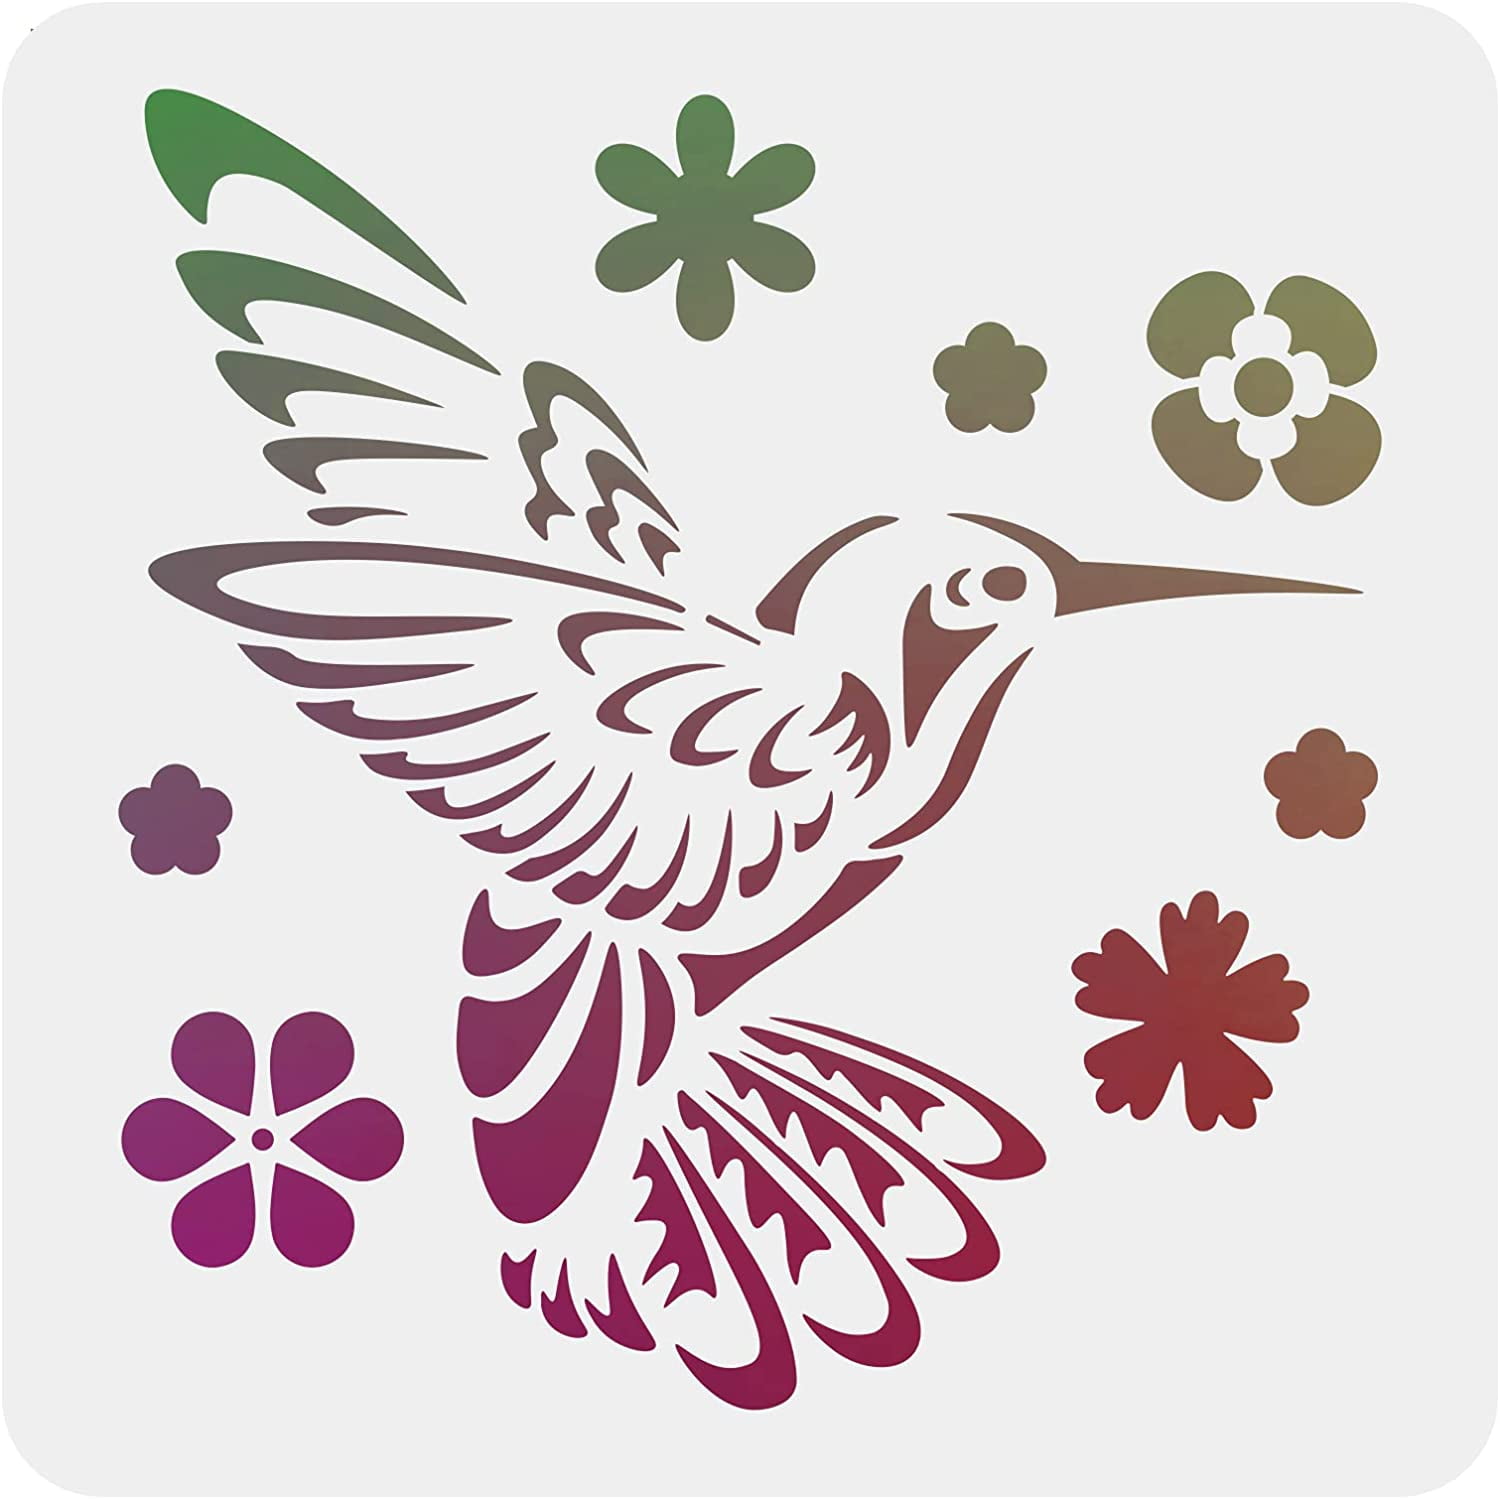 Buy Flower Bird Stencil 12x12 Inches Online